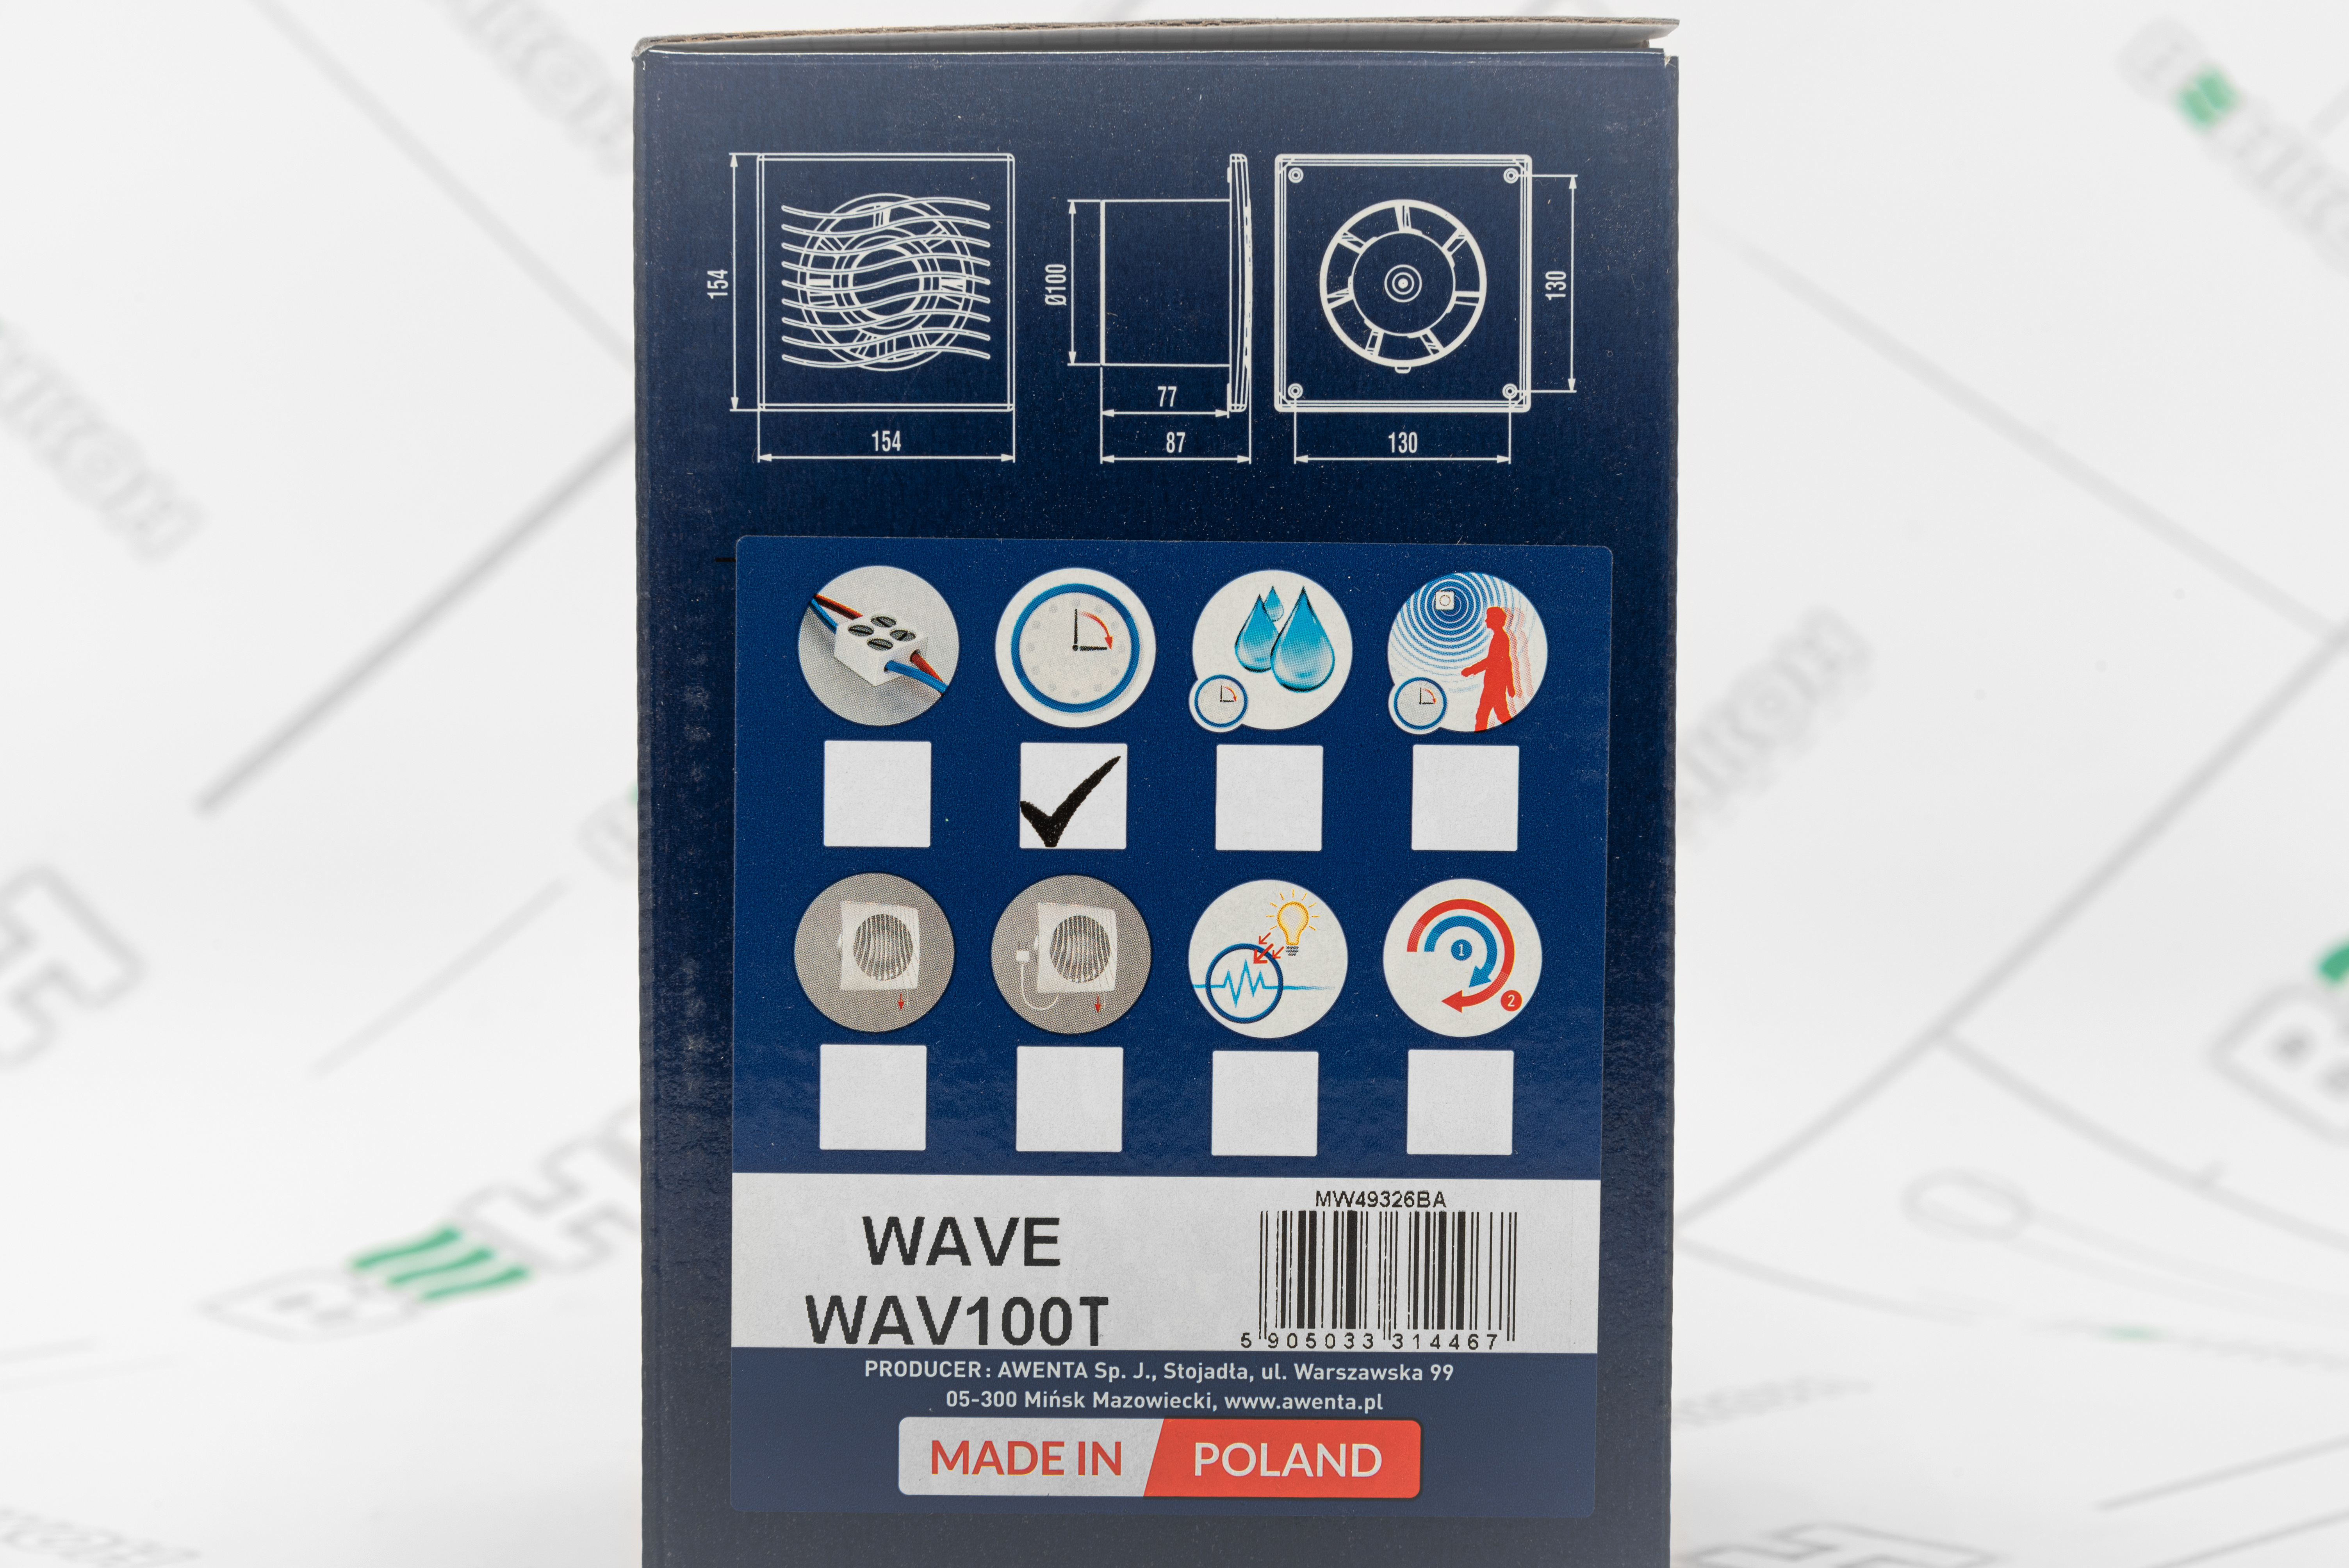 Вытяжной вентилятор Awenta Wave WAV100T внешний вид - фото 9